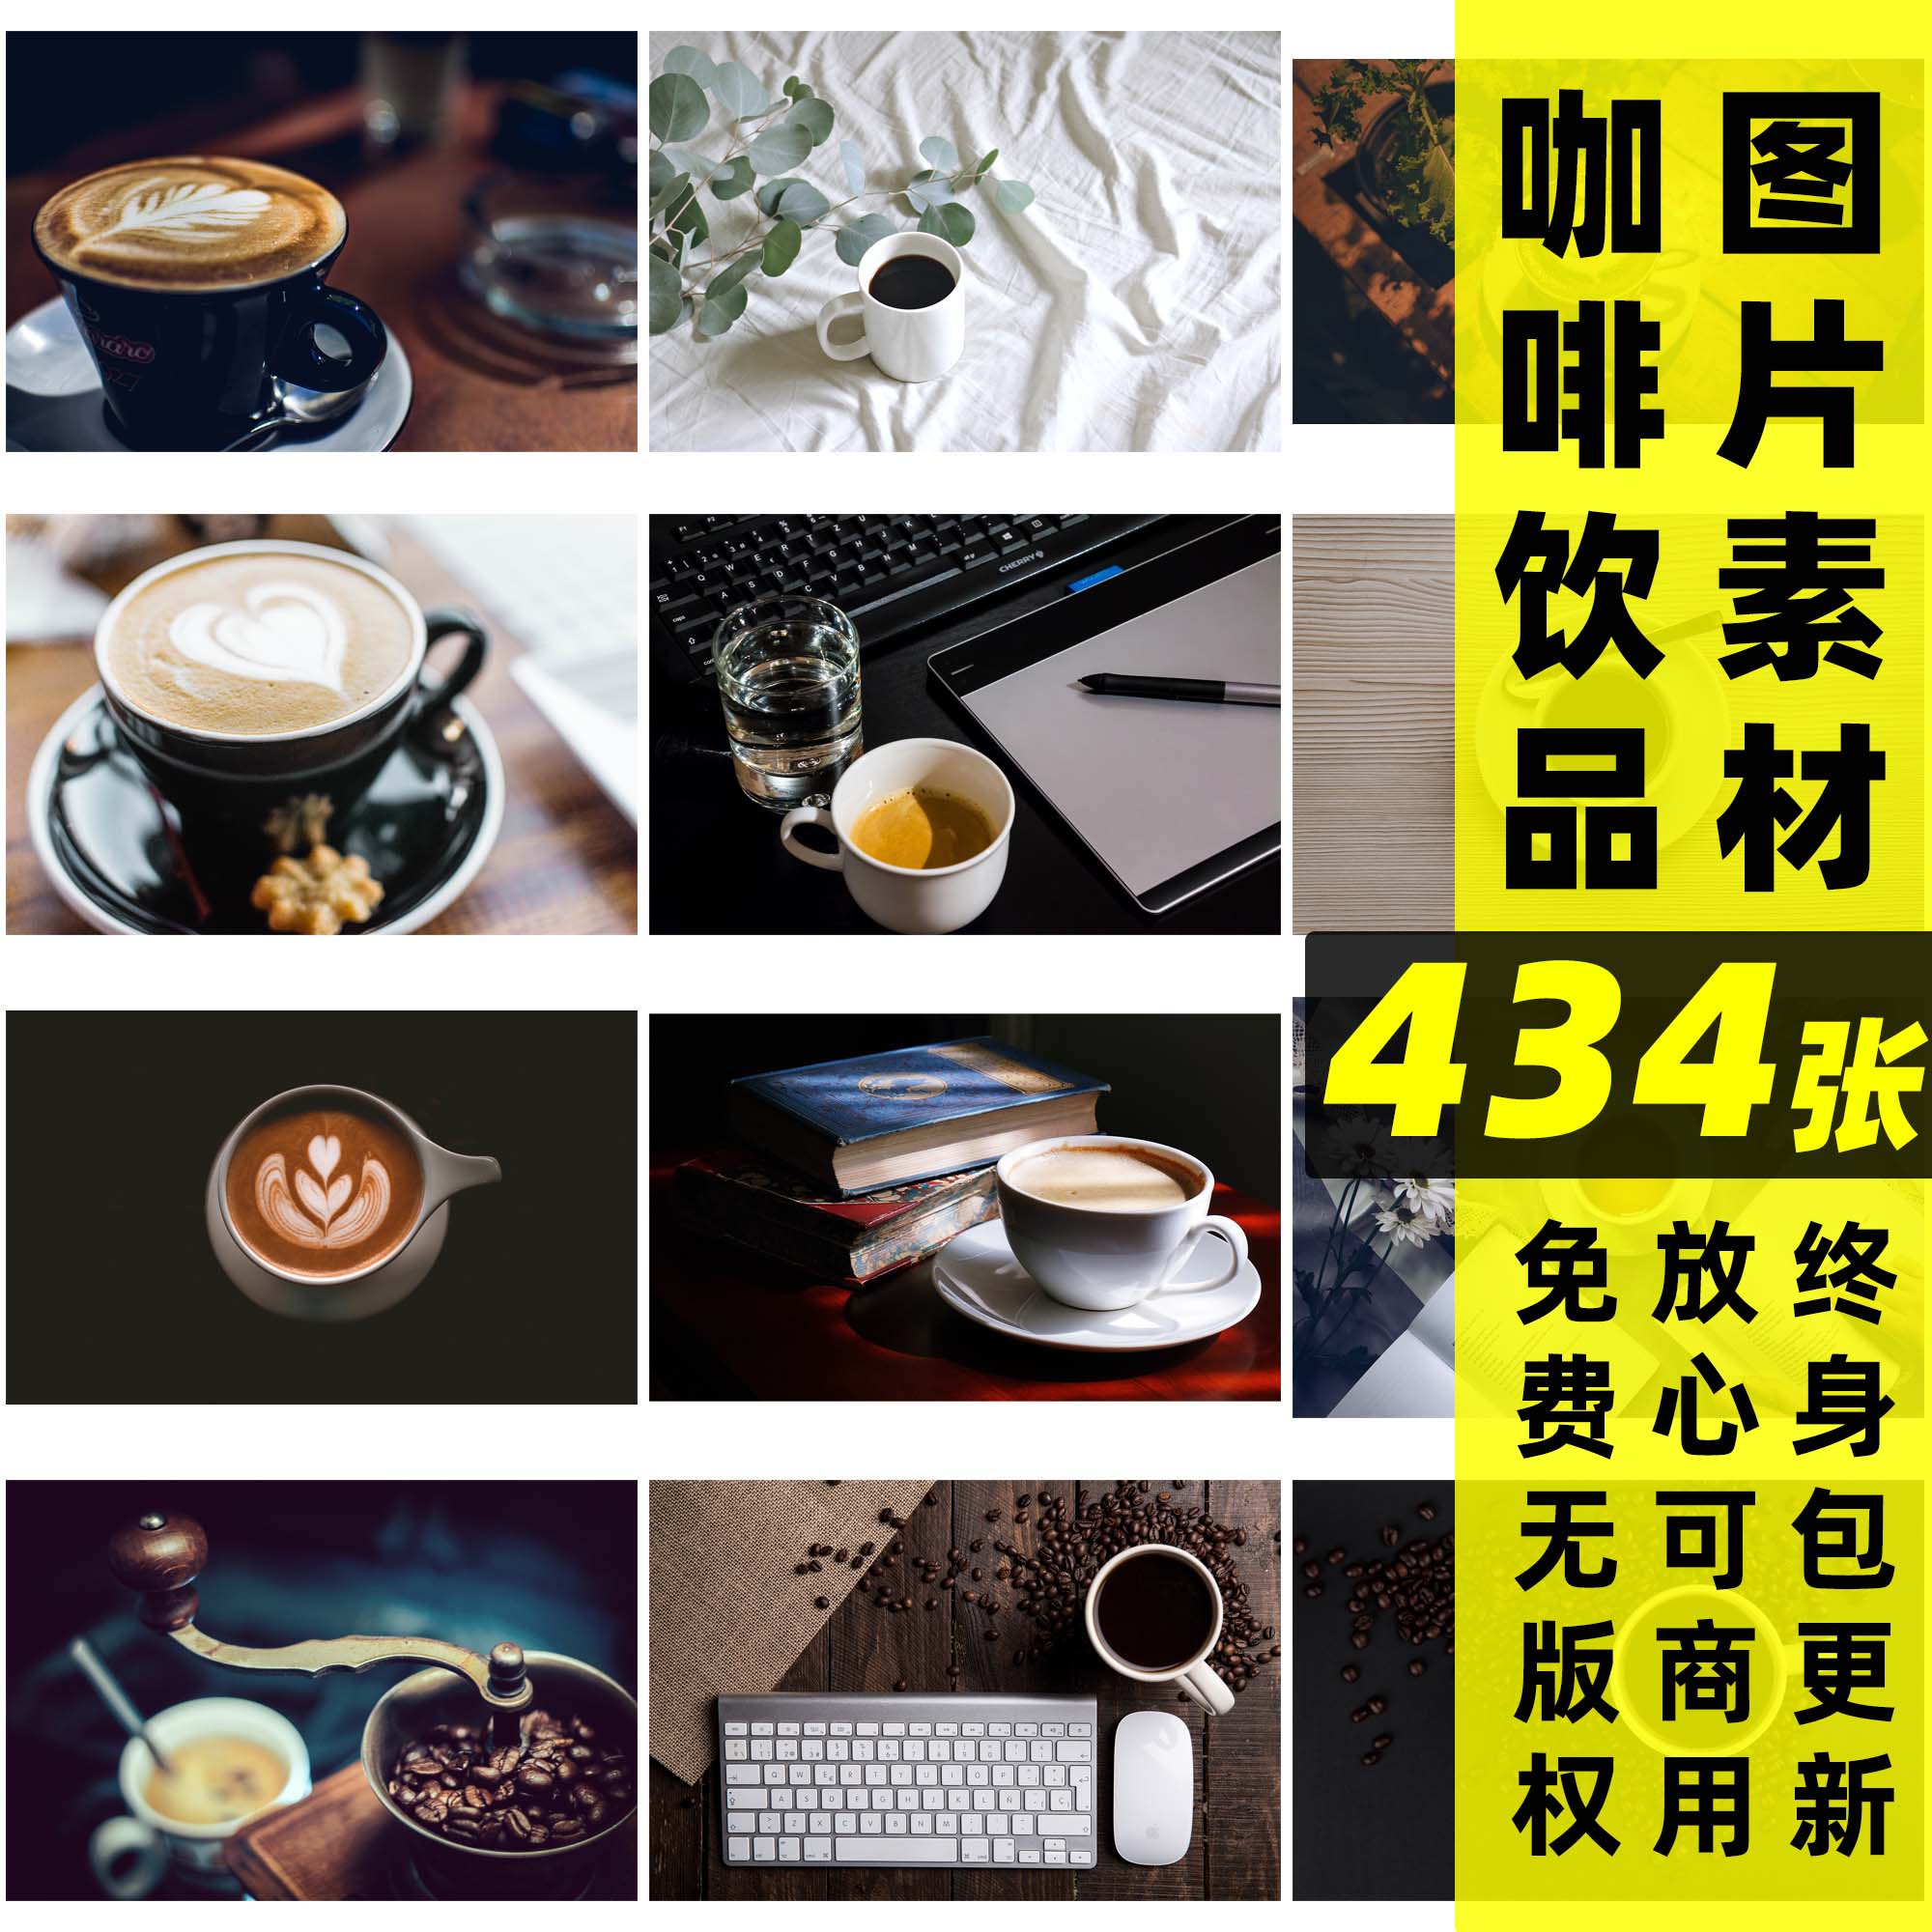 咖啡丨可商用喝咖啡饮品图片背景素材咖啡屋自媒体配图星巴克实拍